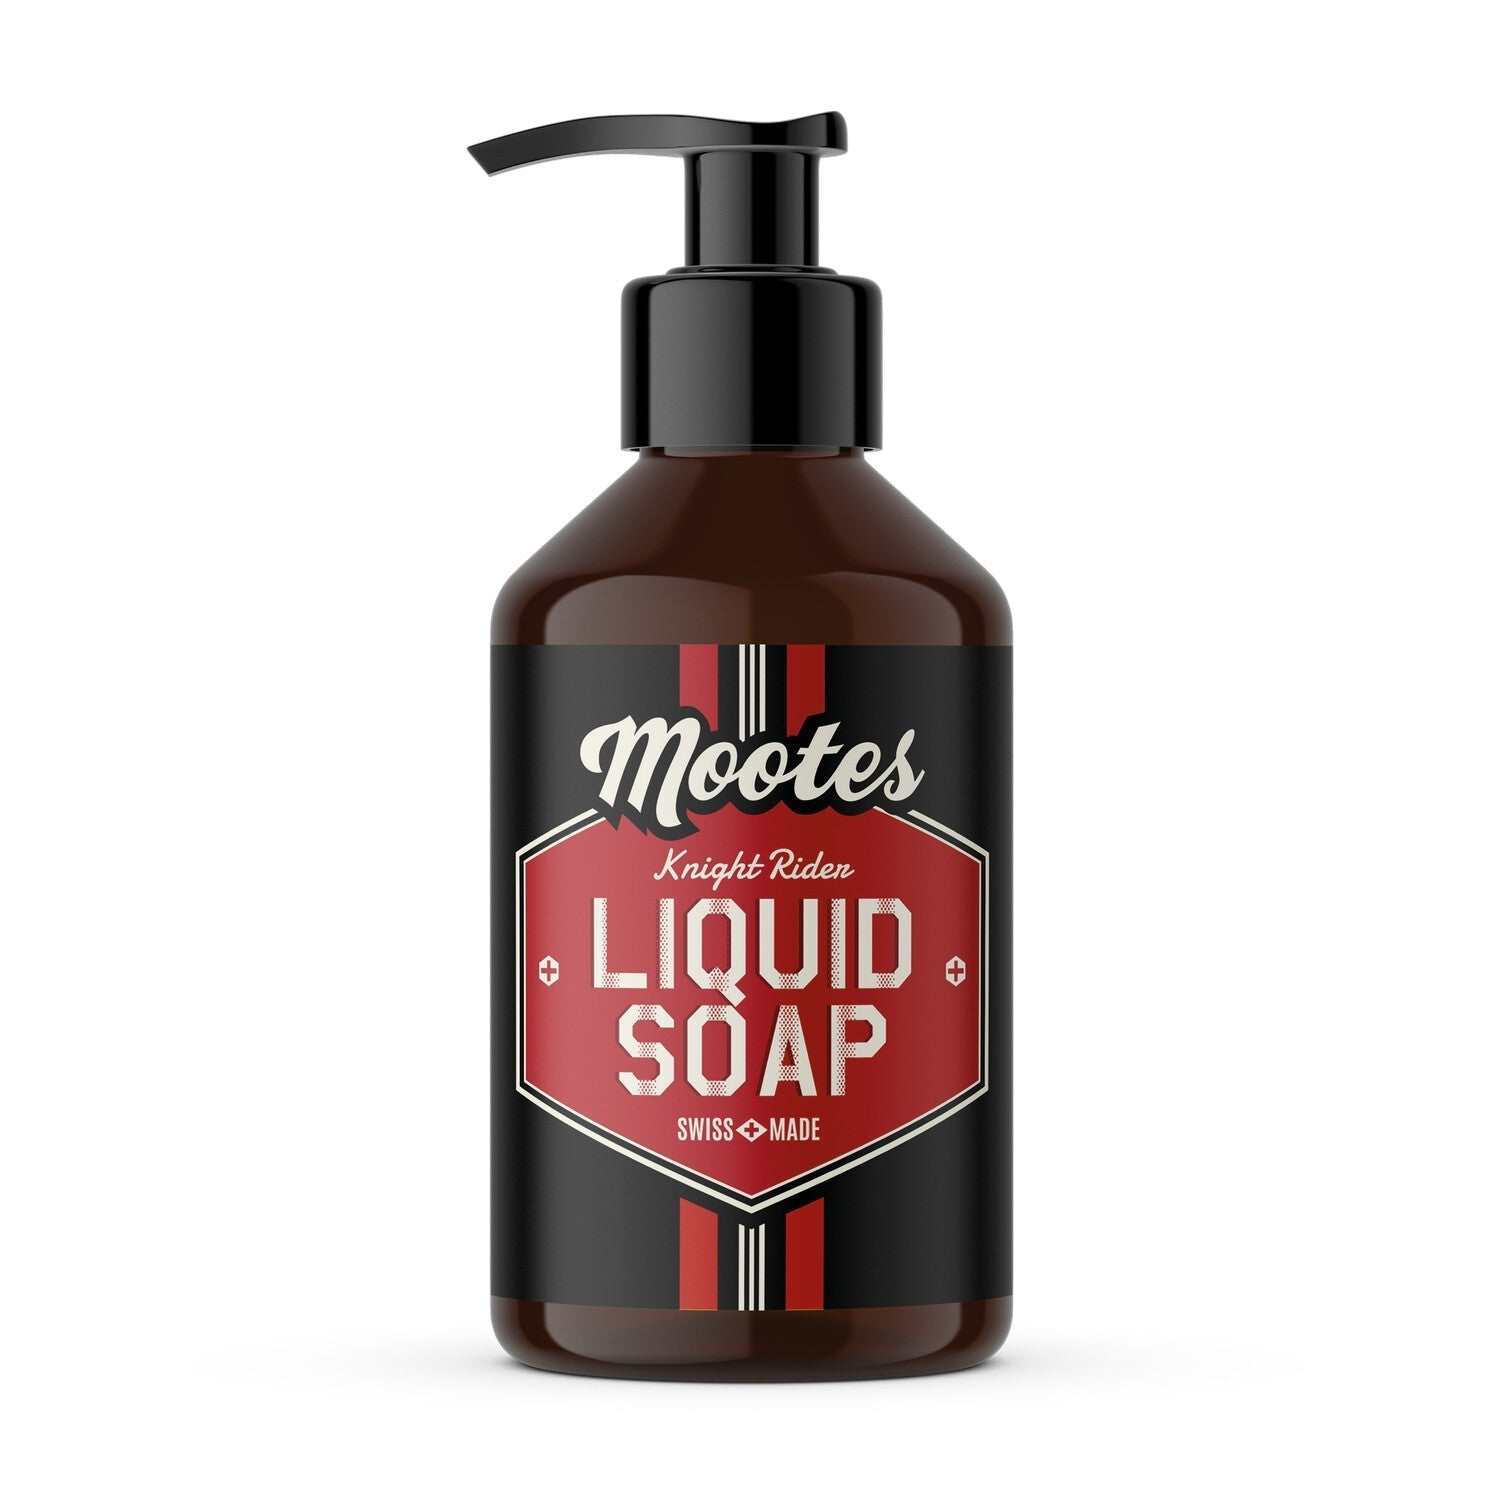 Mootes Liquid Soap Knight Rider